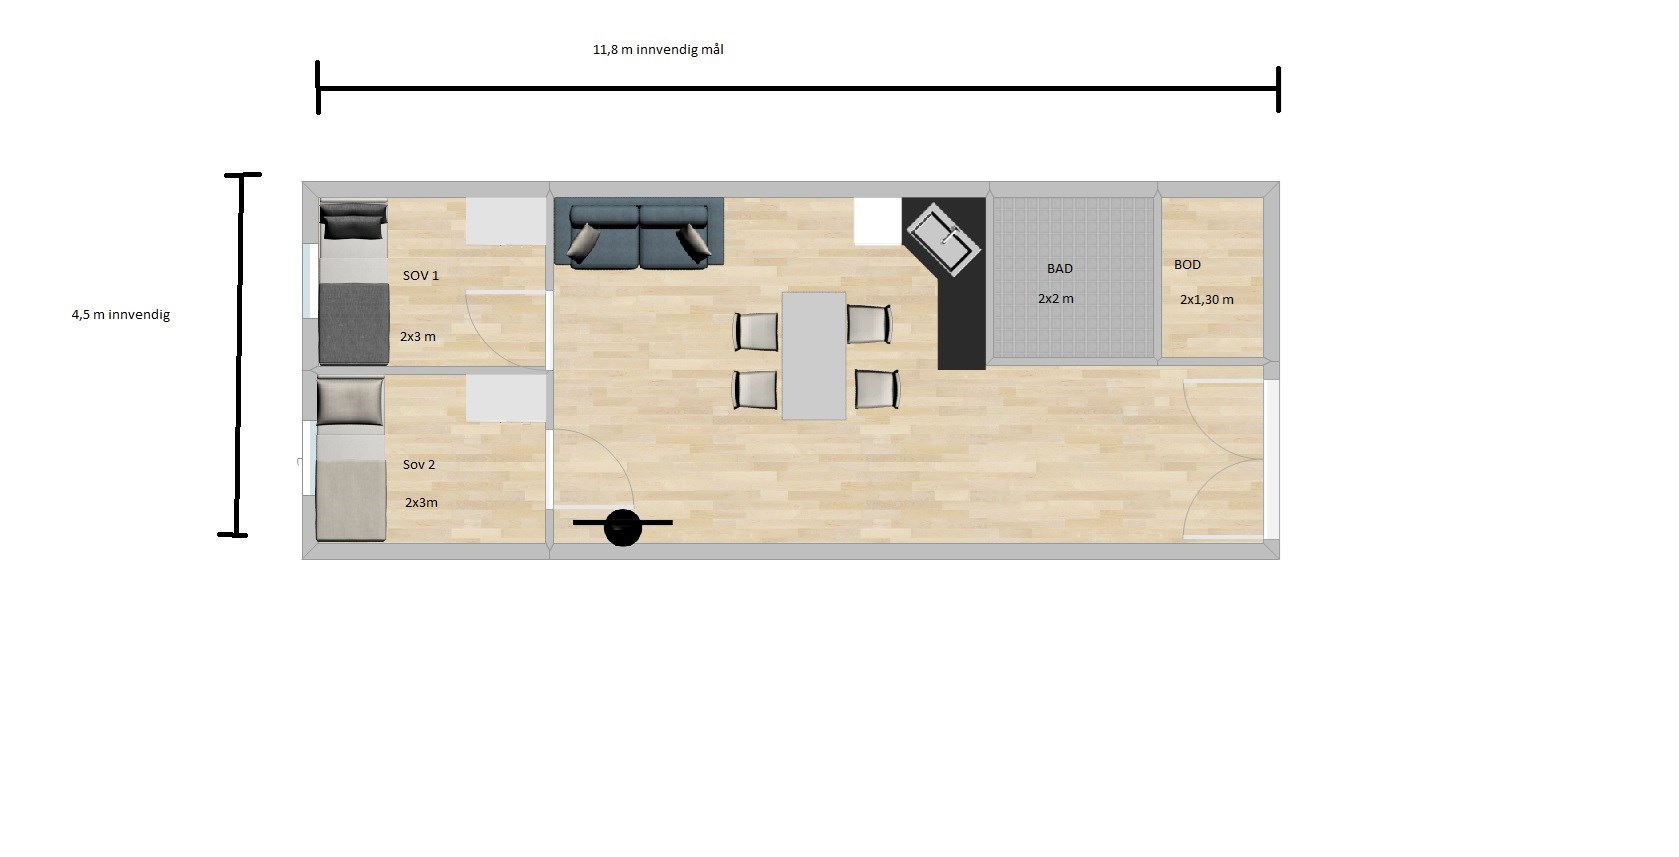 Planløsning til sokkel leilighet - Plantegning byggebolig.jpg - shd_cool